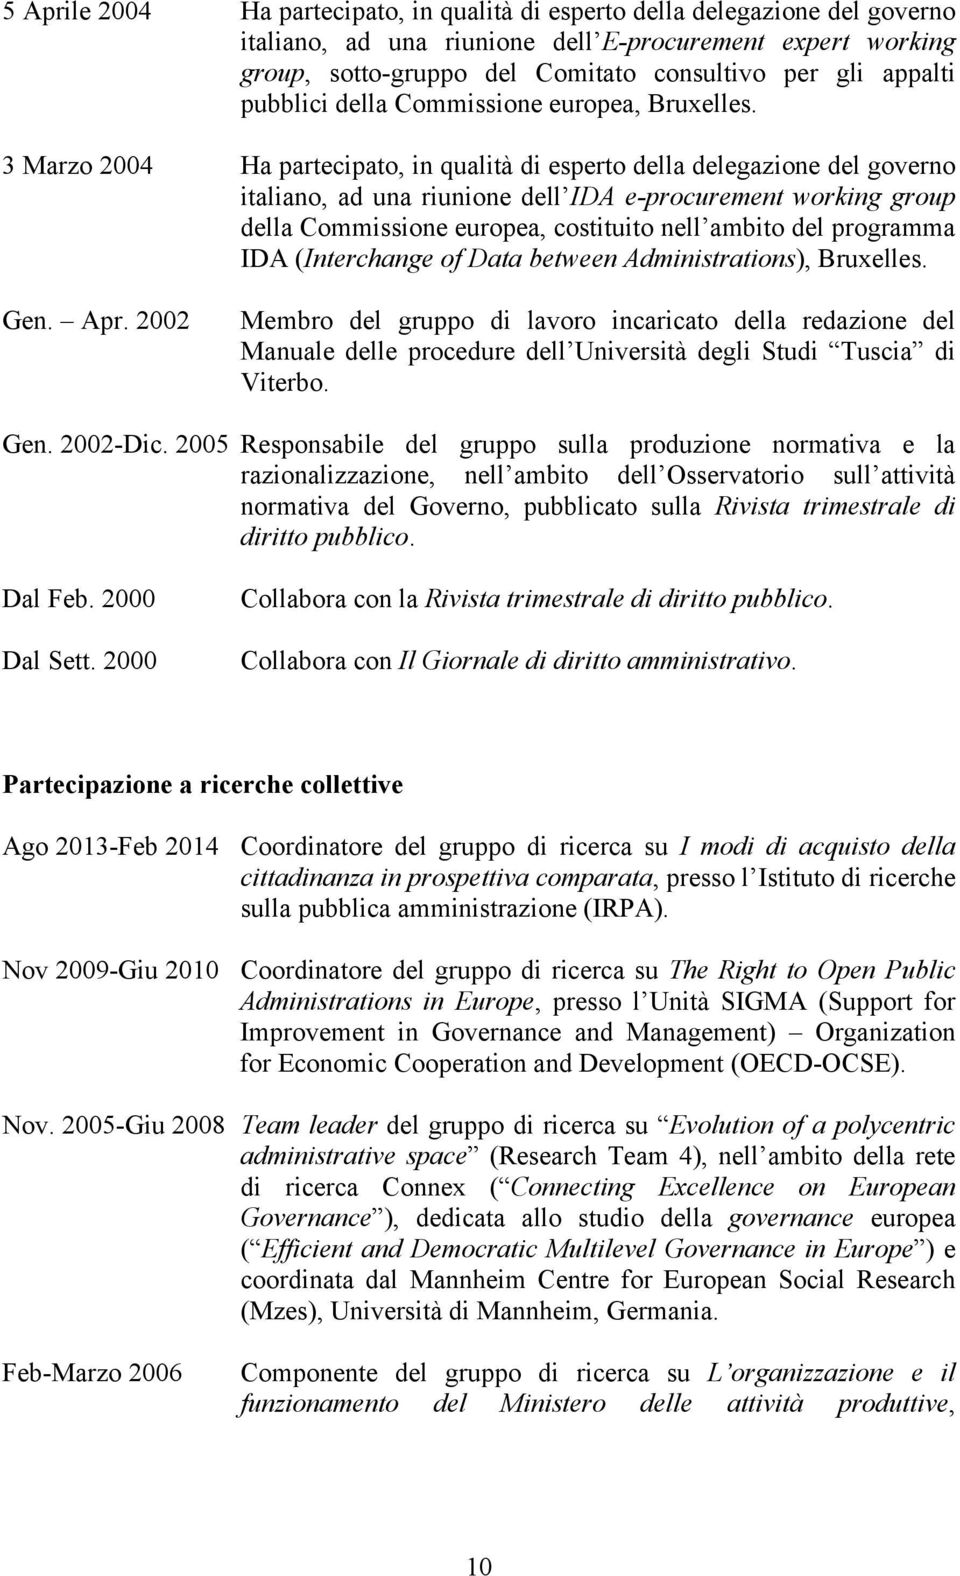 3 Marzo 2004 Ha partecipato, in qualità di esperto della delegazione del governo italiano, ad una riunione dell IDA e-procurement working group della Commissione europea, costituito nell ambito del